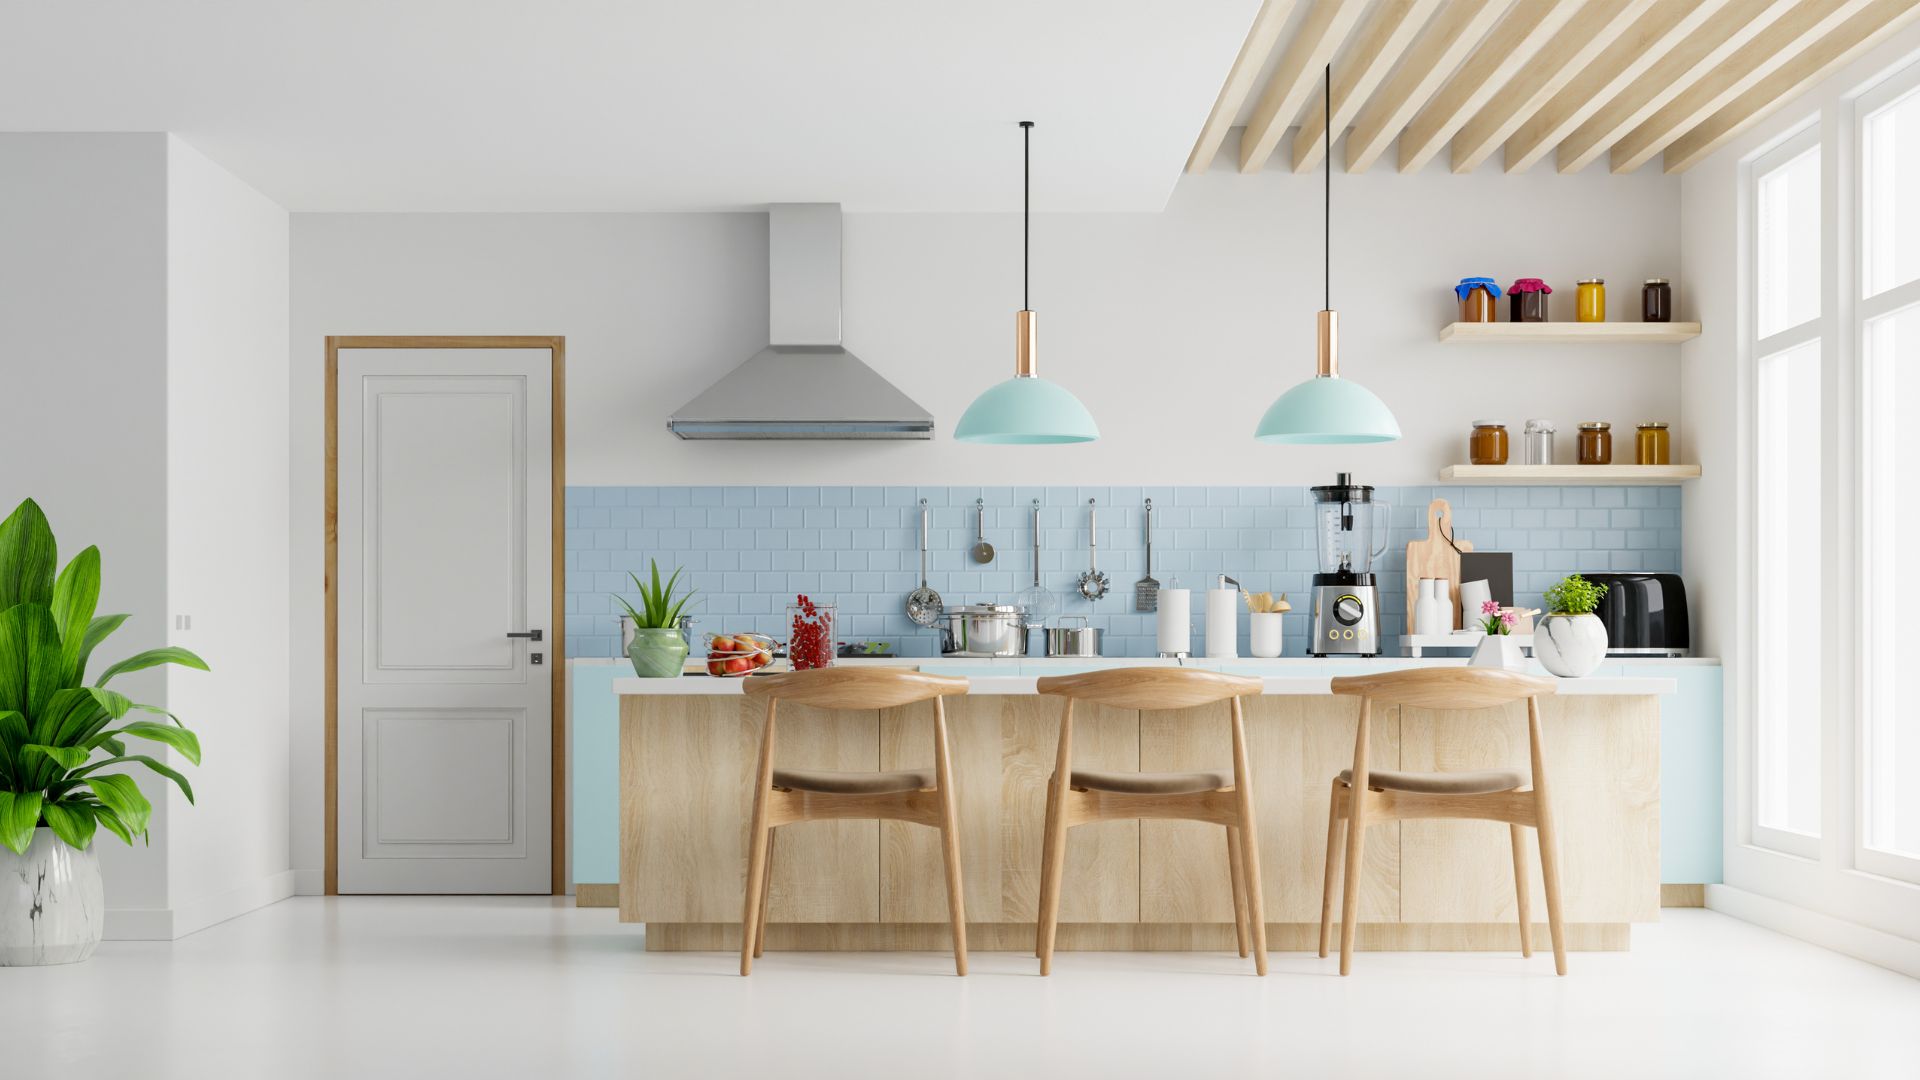 Transforma tu hogar con una cocina a medida: Diseños personalizados que se adaptan a tus necesidades